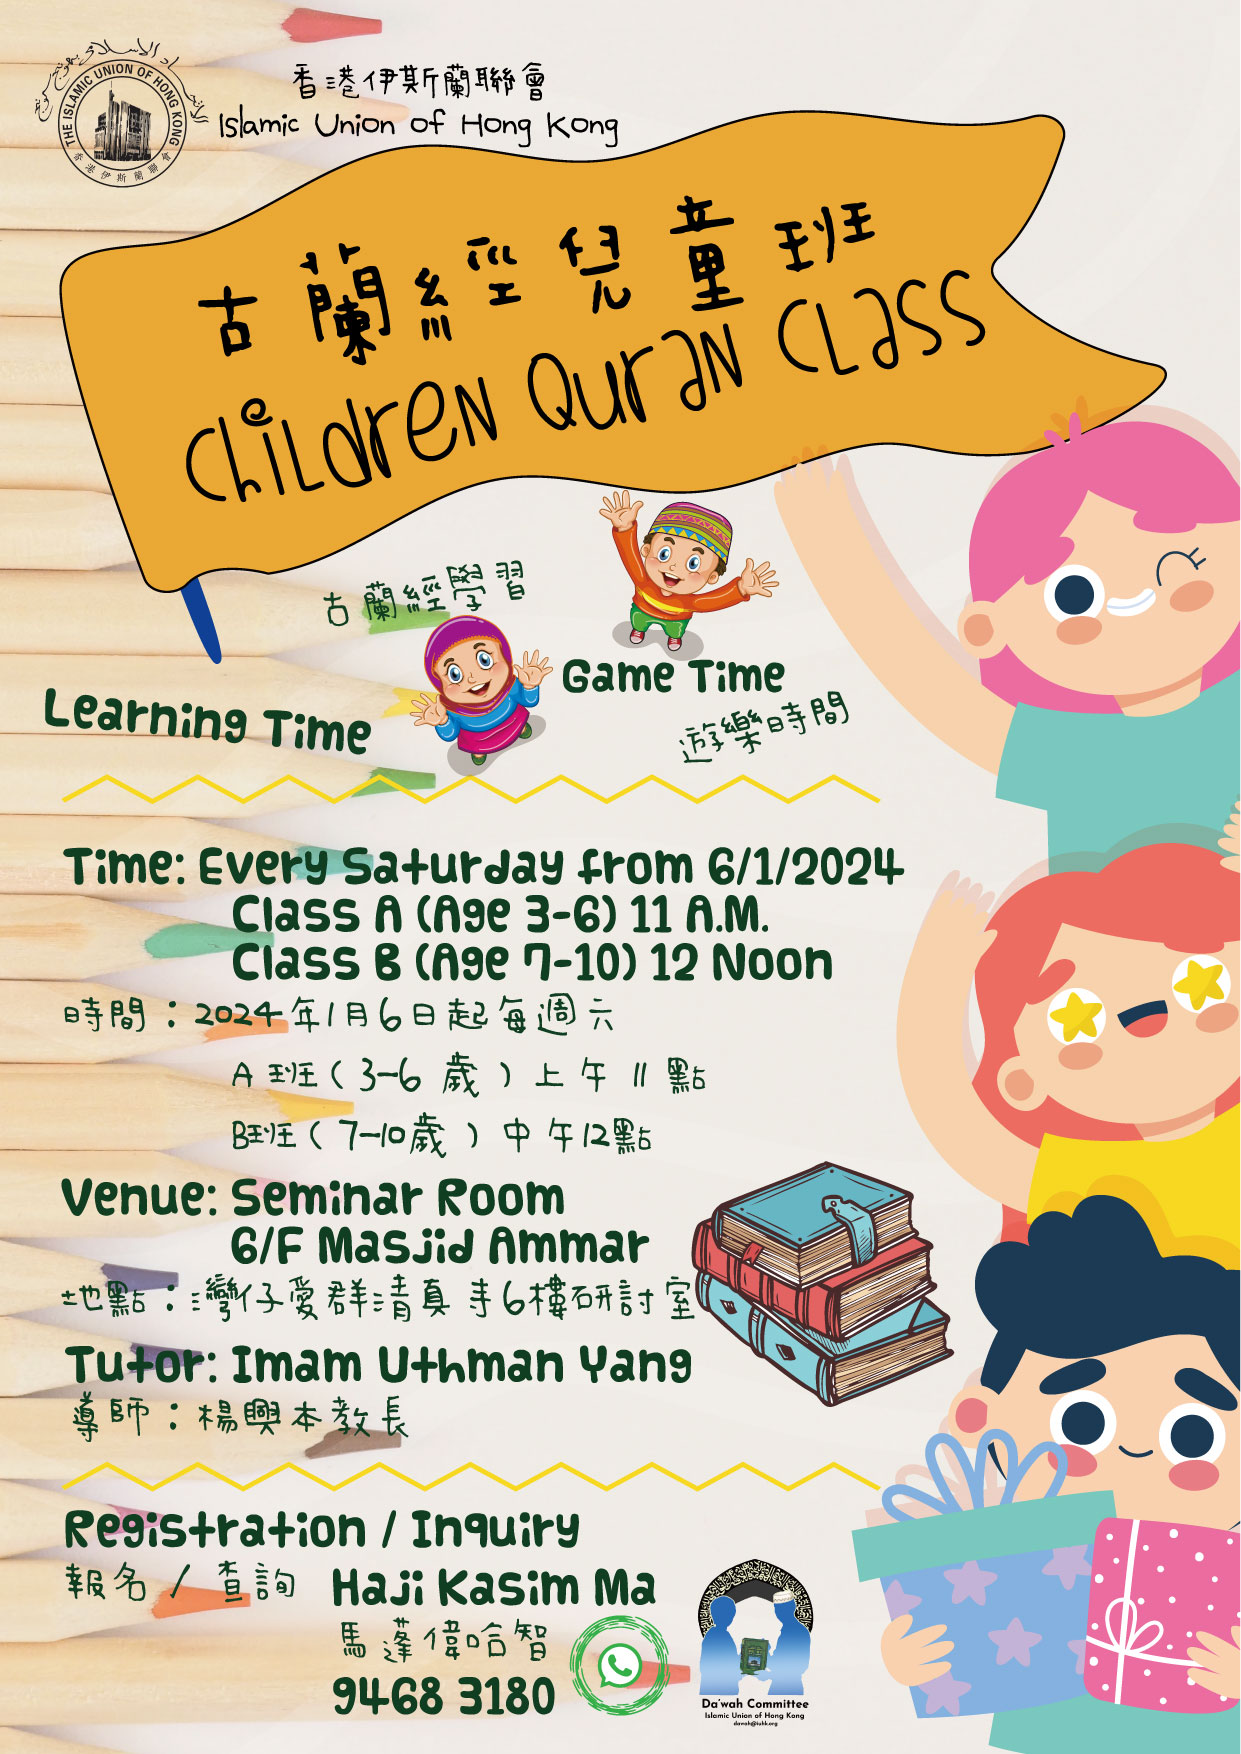 Children Quran Class